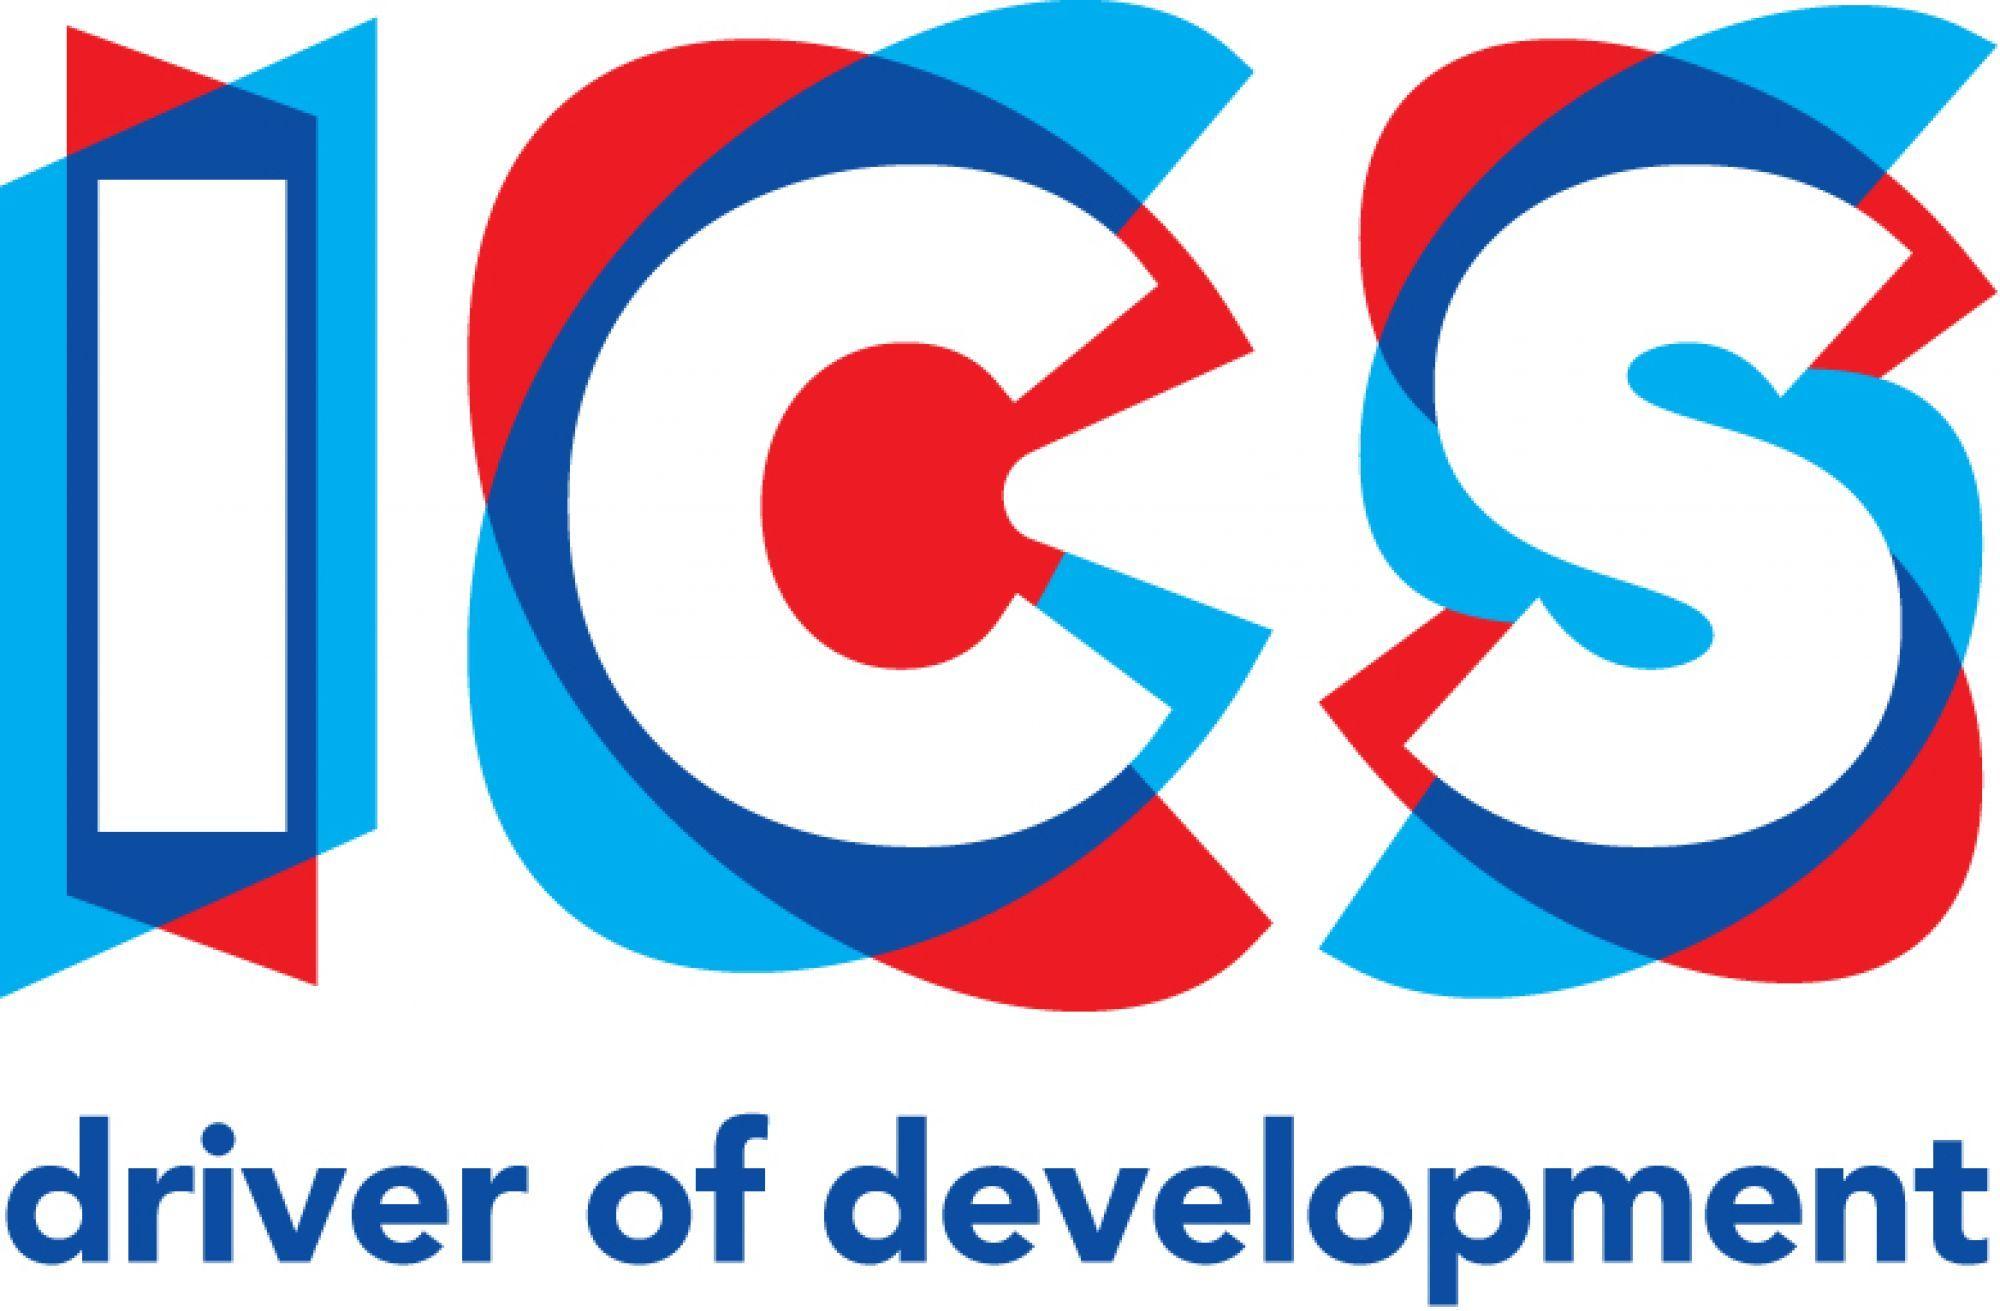 ICS Logo - ICS